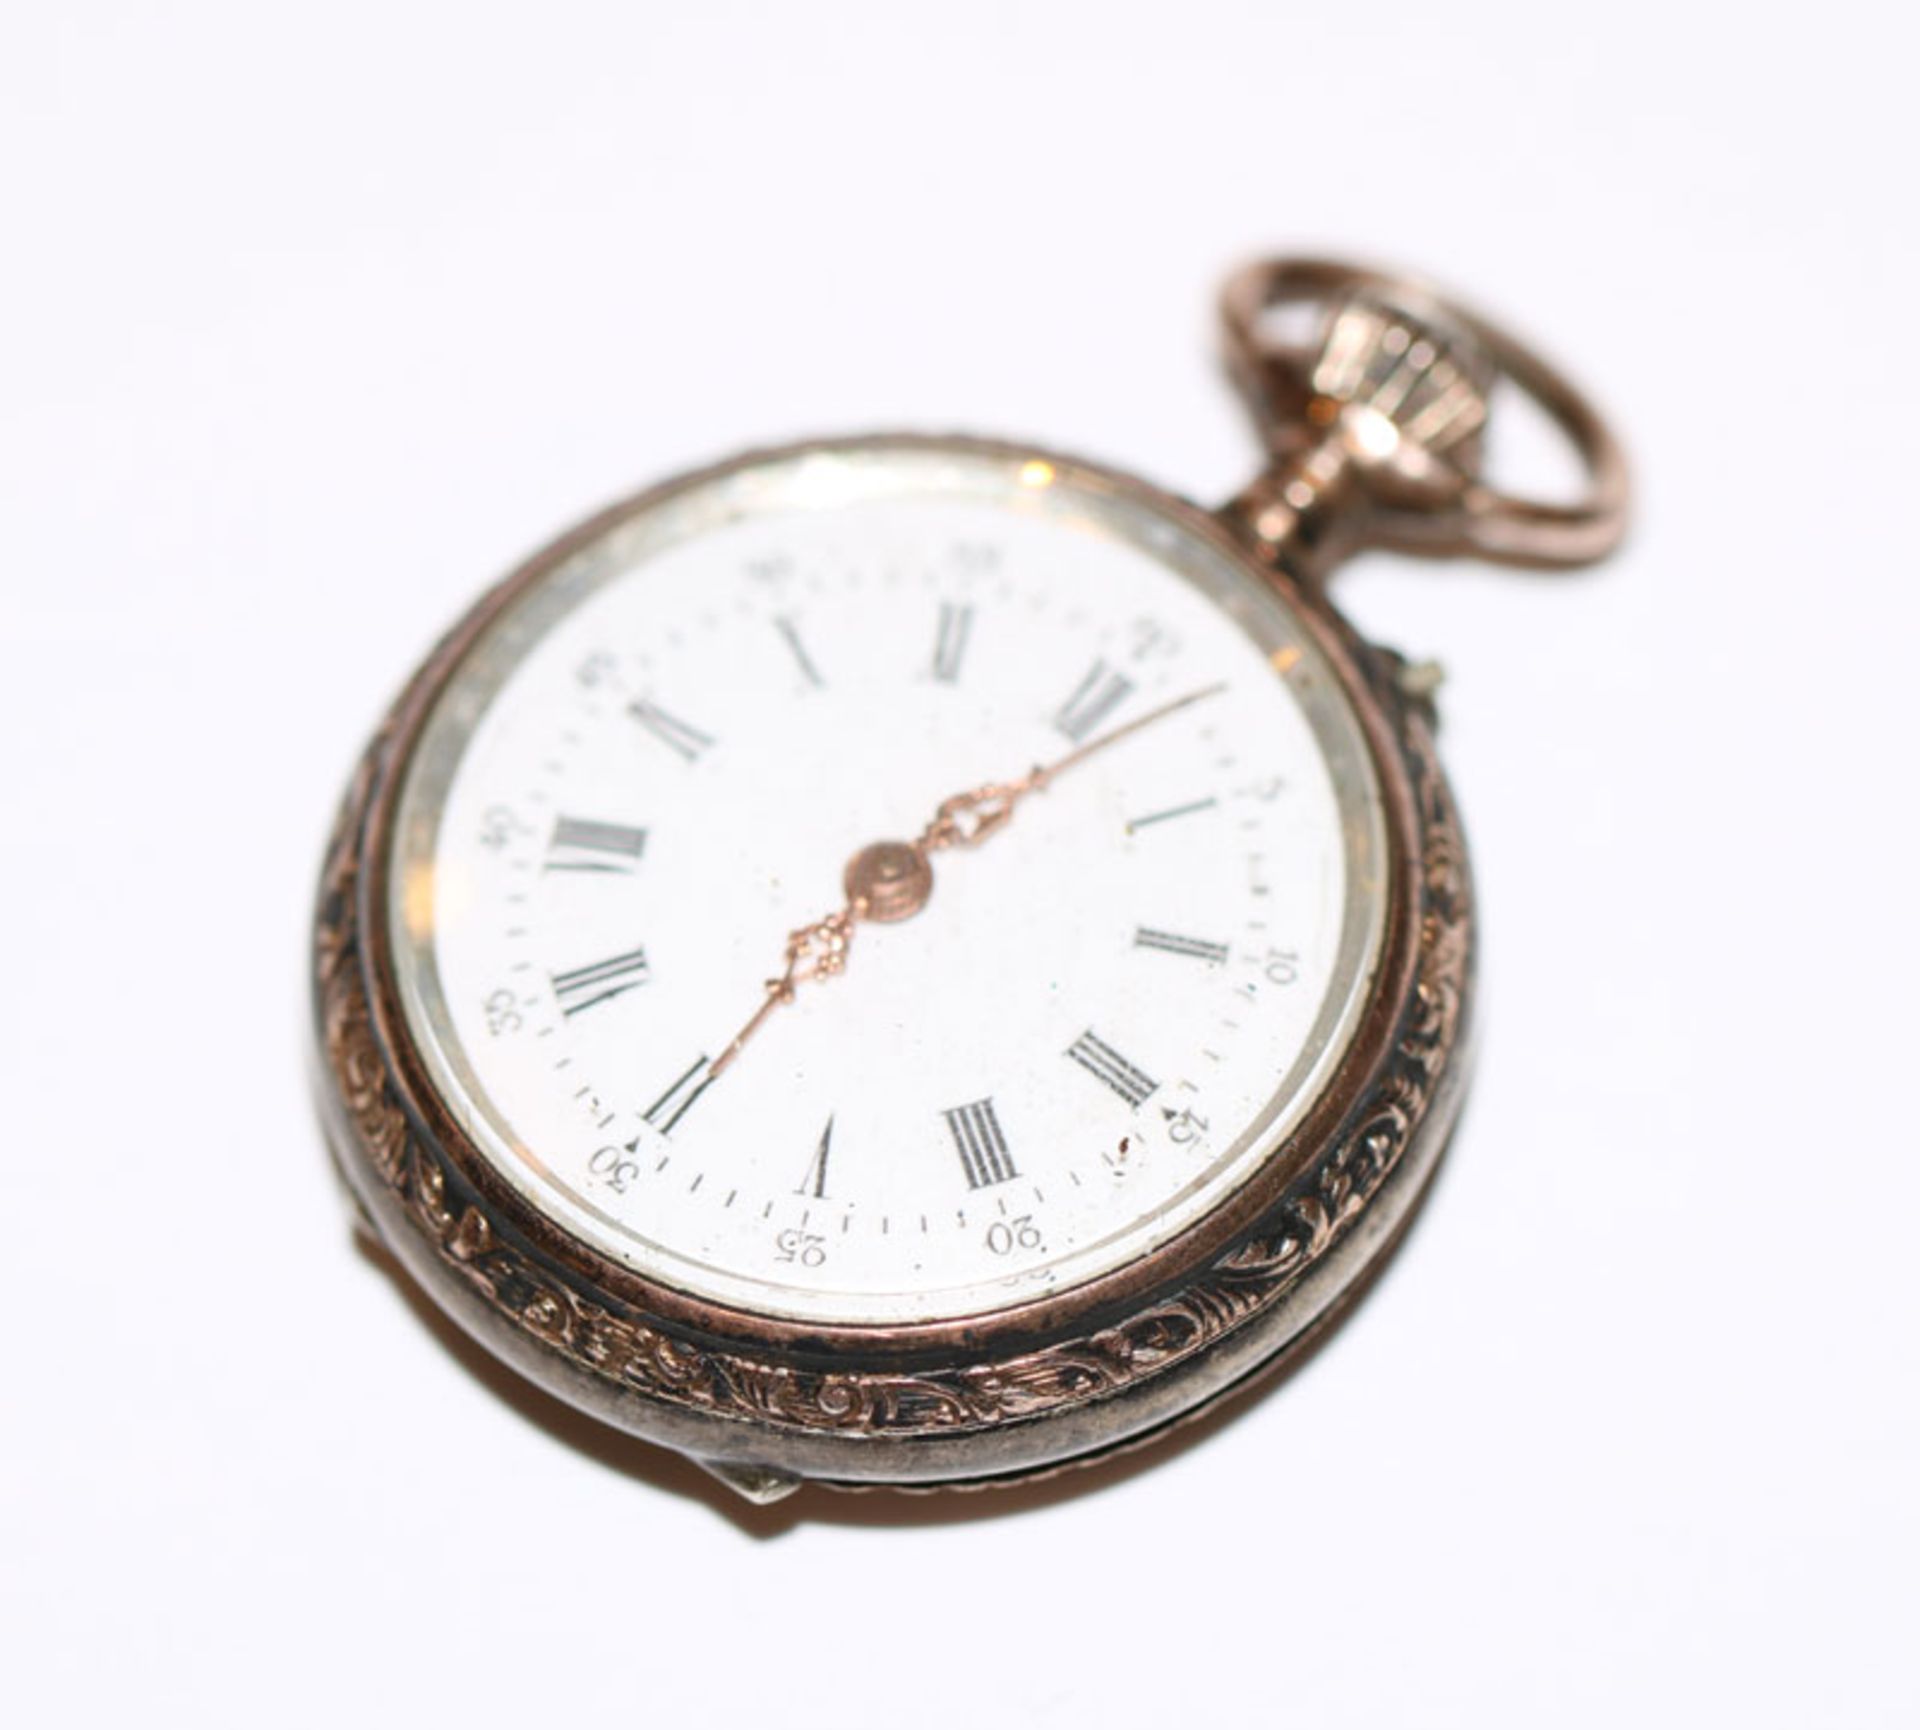 Silber Damen Taschenuhr, rückseitig mit Gravurdekor, D 3 cm, Funktion nicht geprüft